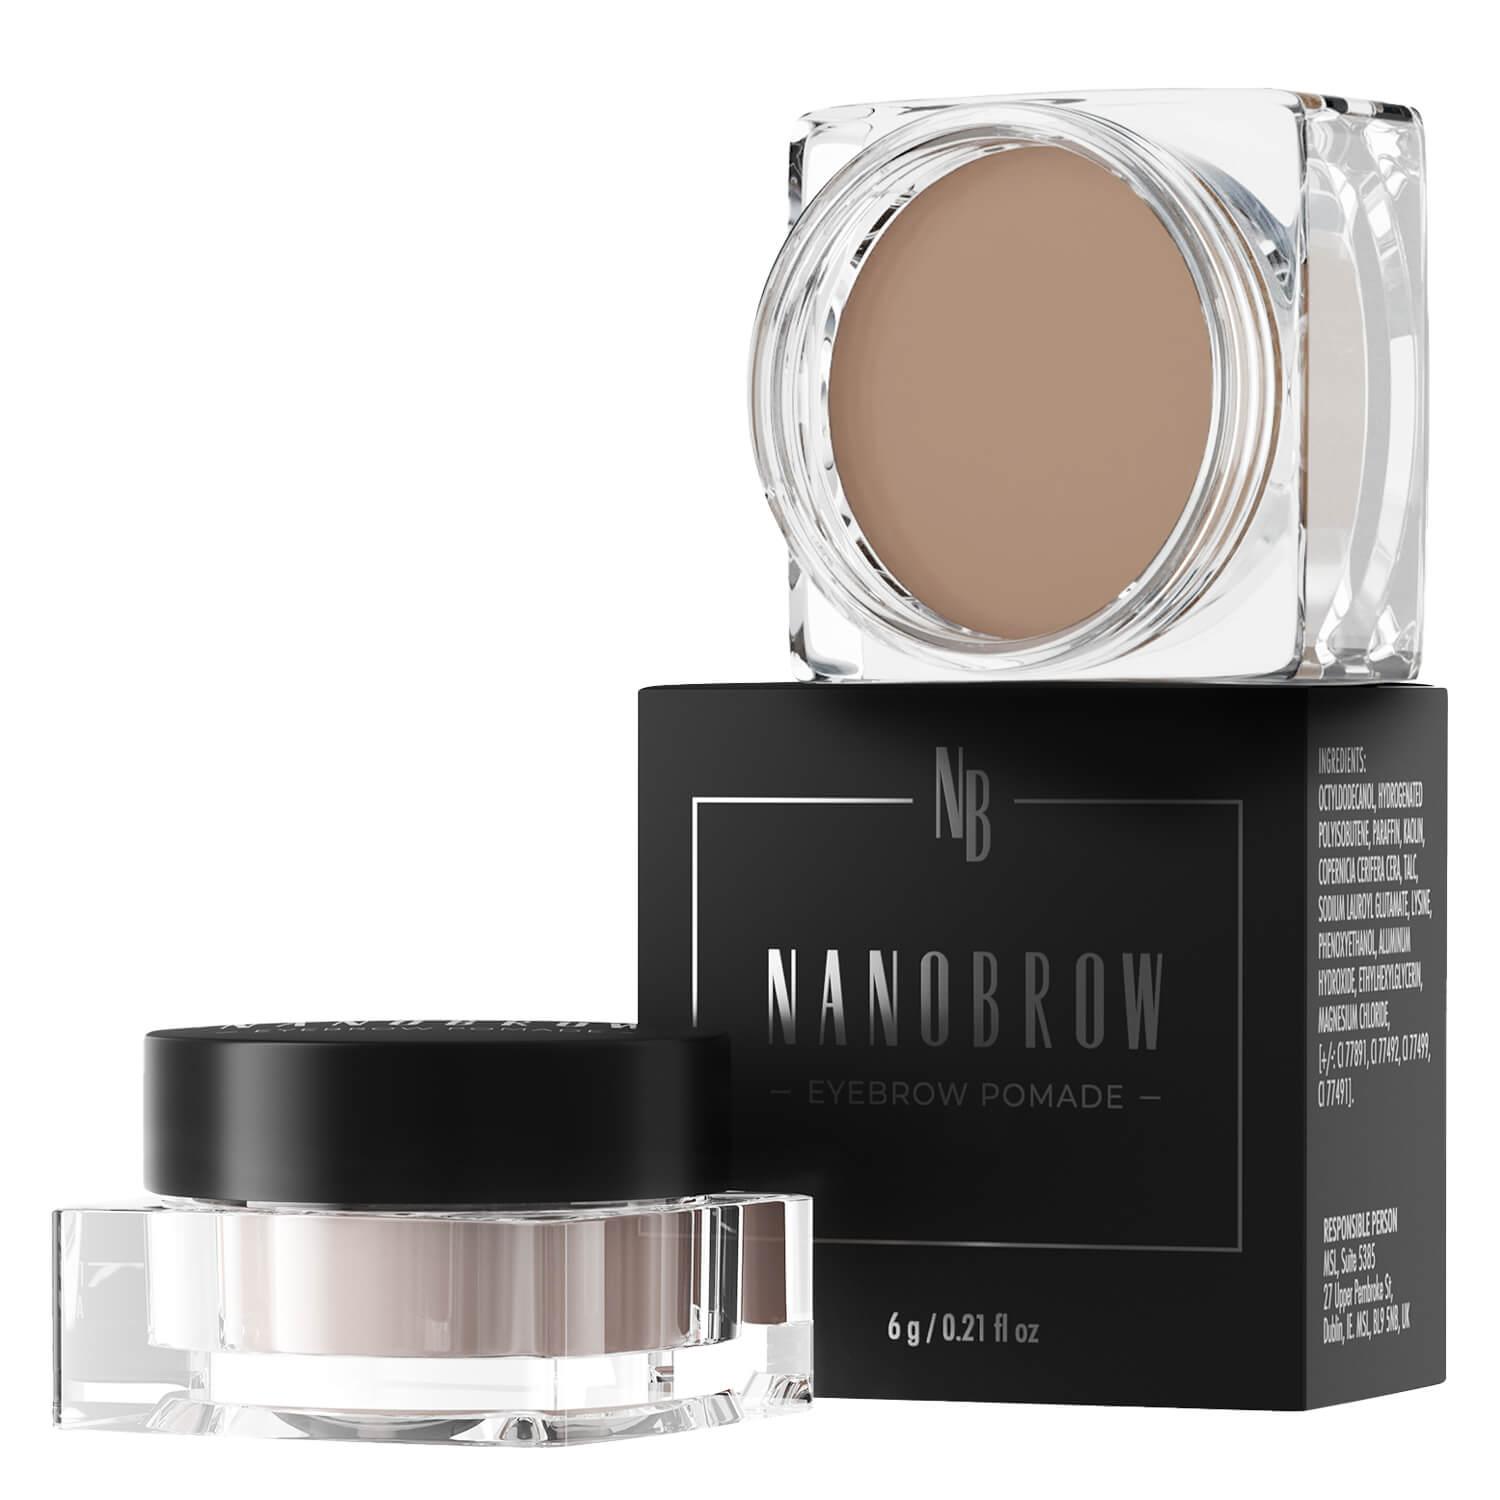 Nanobrow - Eyebrow Pomade Light Brown